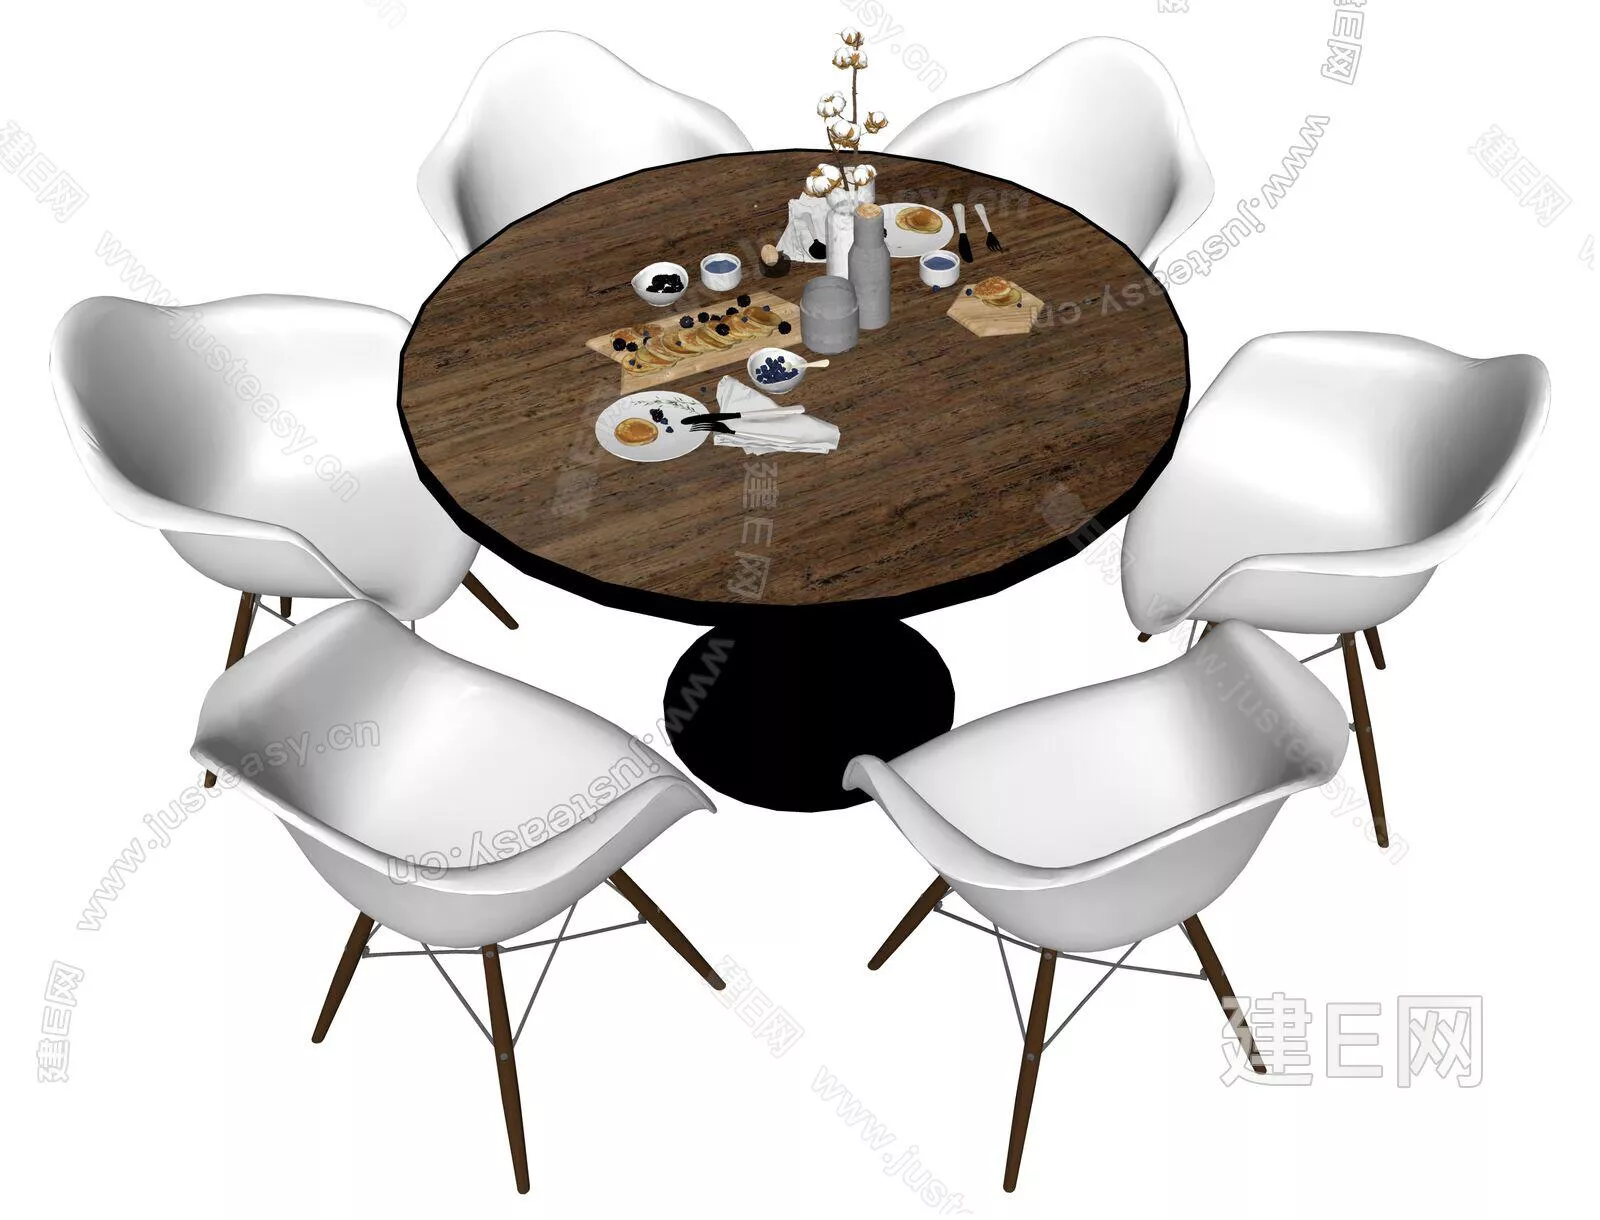 INDUSTRIAL DINING TABLE SET - SKETCHUP 3D MODEL - ENSCAPE - 111952323